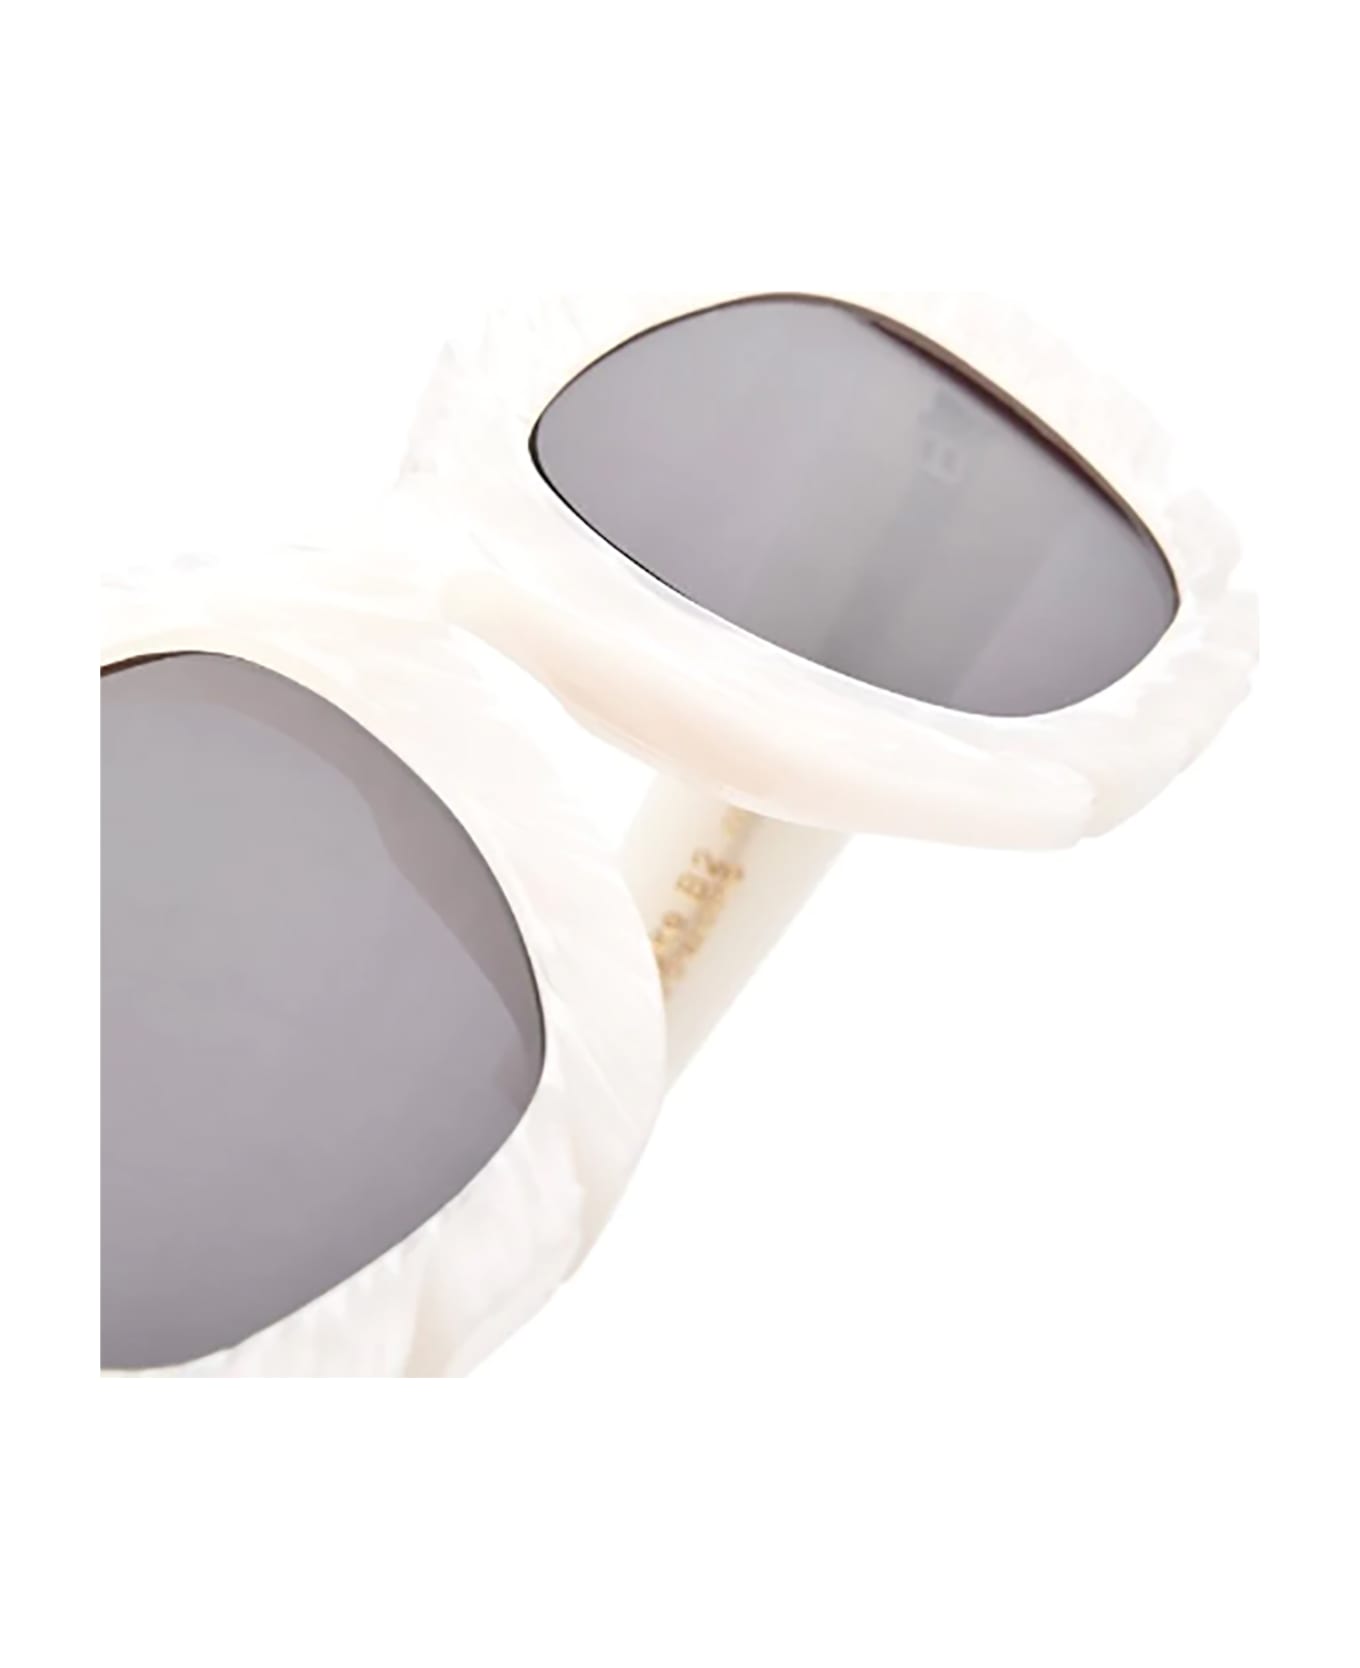 Kuboraum B2 Sunglasses - Wh Wn サングラス